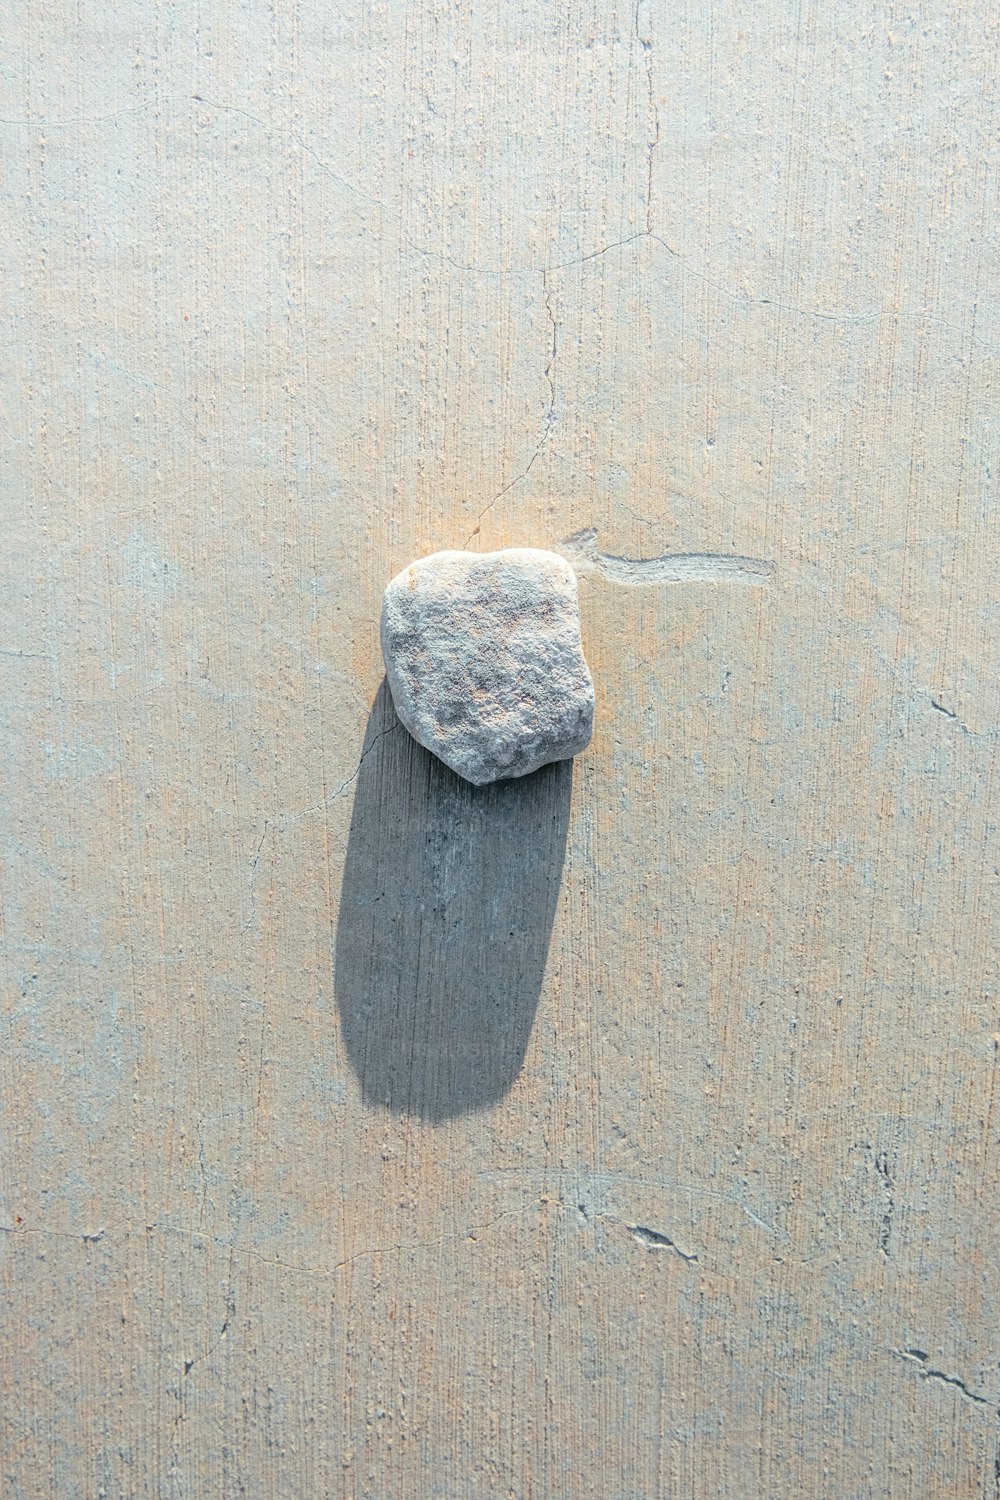 모래 사장 위에 앉아있는 바위